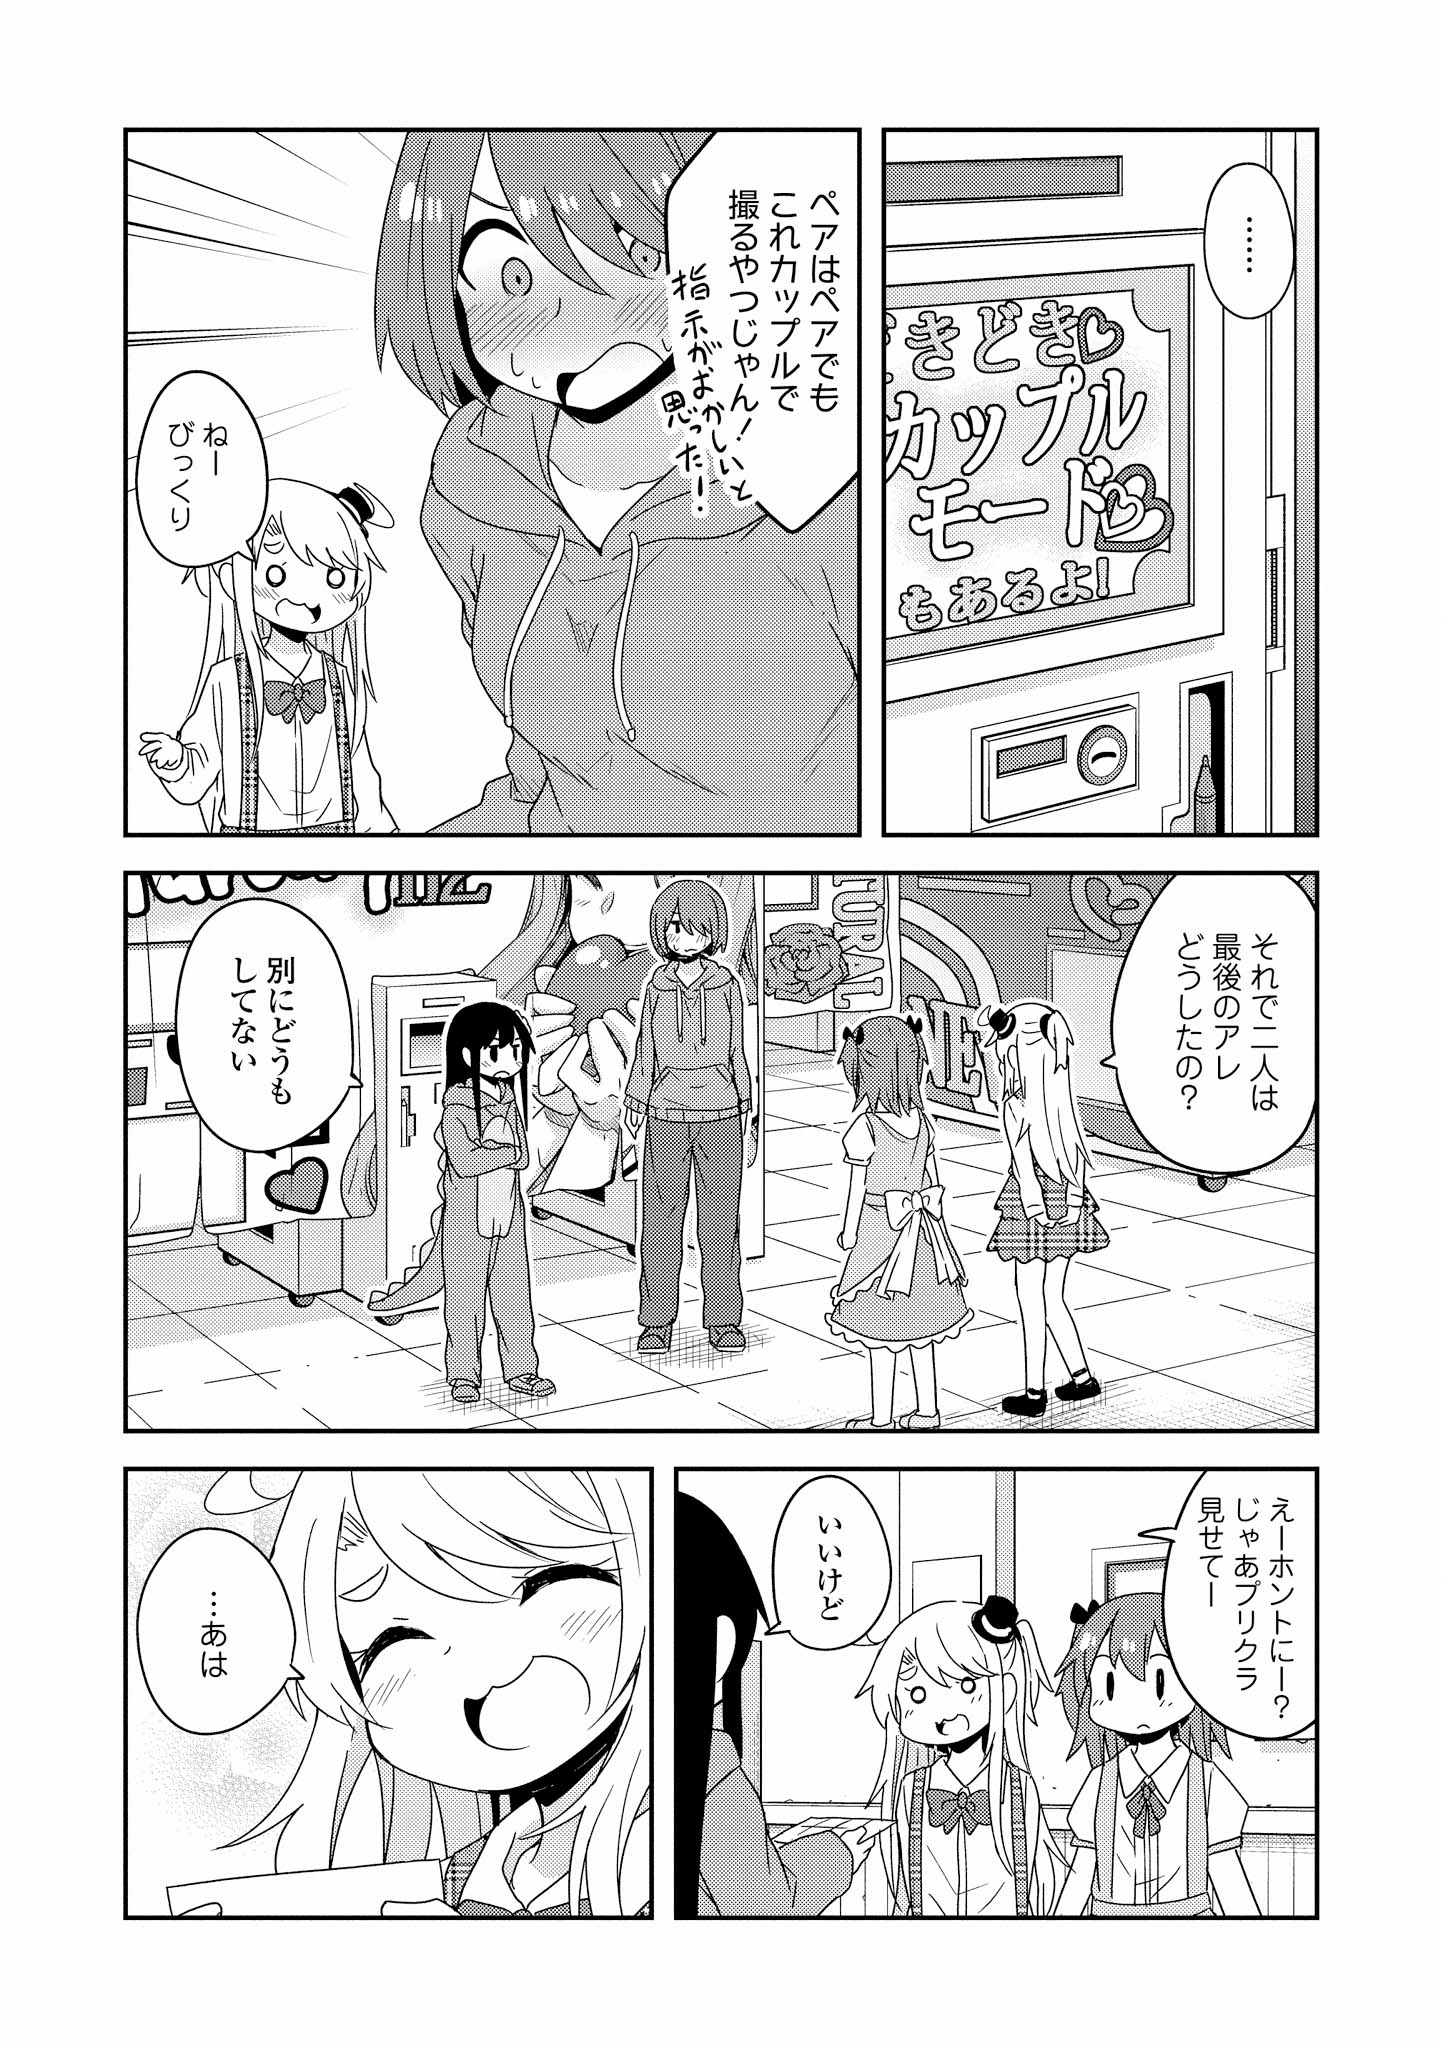 Watashi ni Tenshi ga Maiorita! - Chapter 43 - Page 19